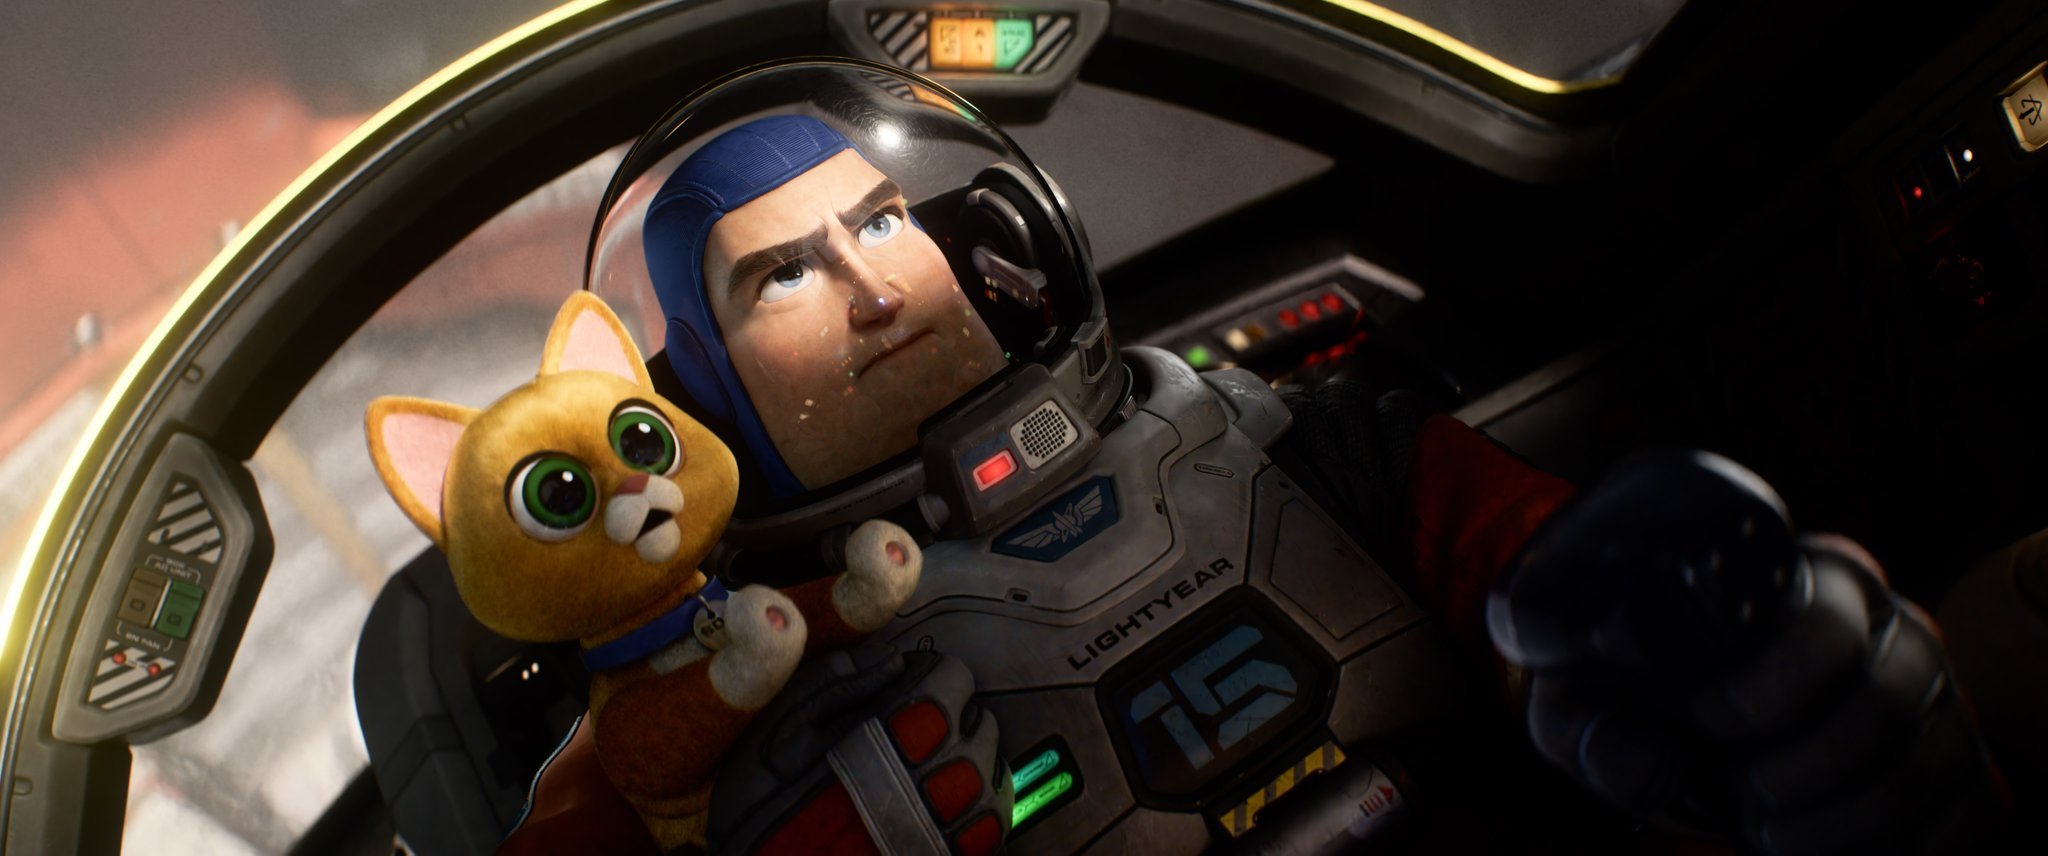 Nhân vật phi hành gia Buzz Lightyear trong phim hoạt hình sắp ra mắt của Pixar, lấy cảm hứng từ đồ chơi cùng tên trong loạt phim Toy Story